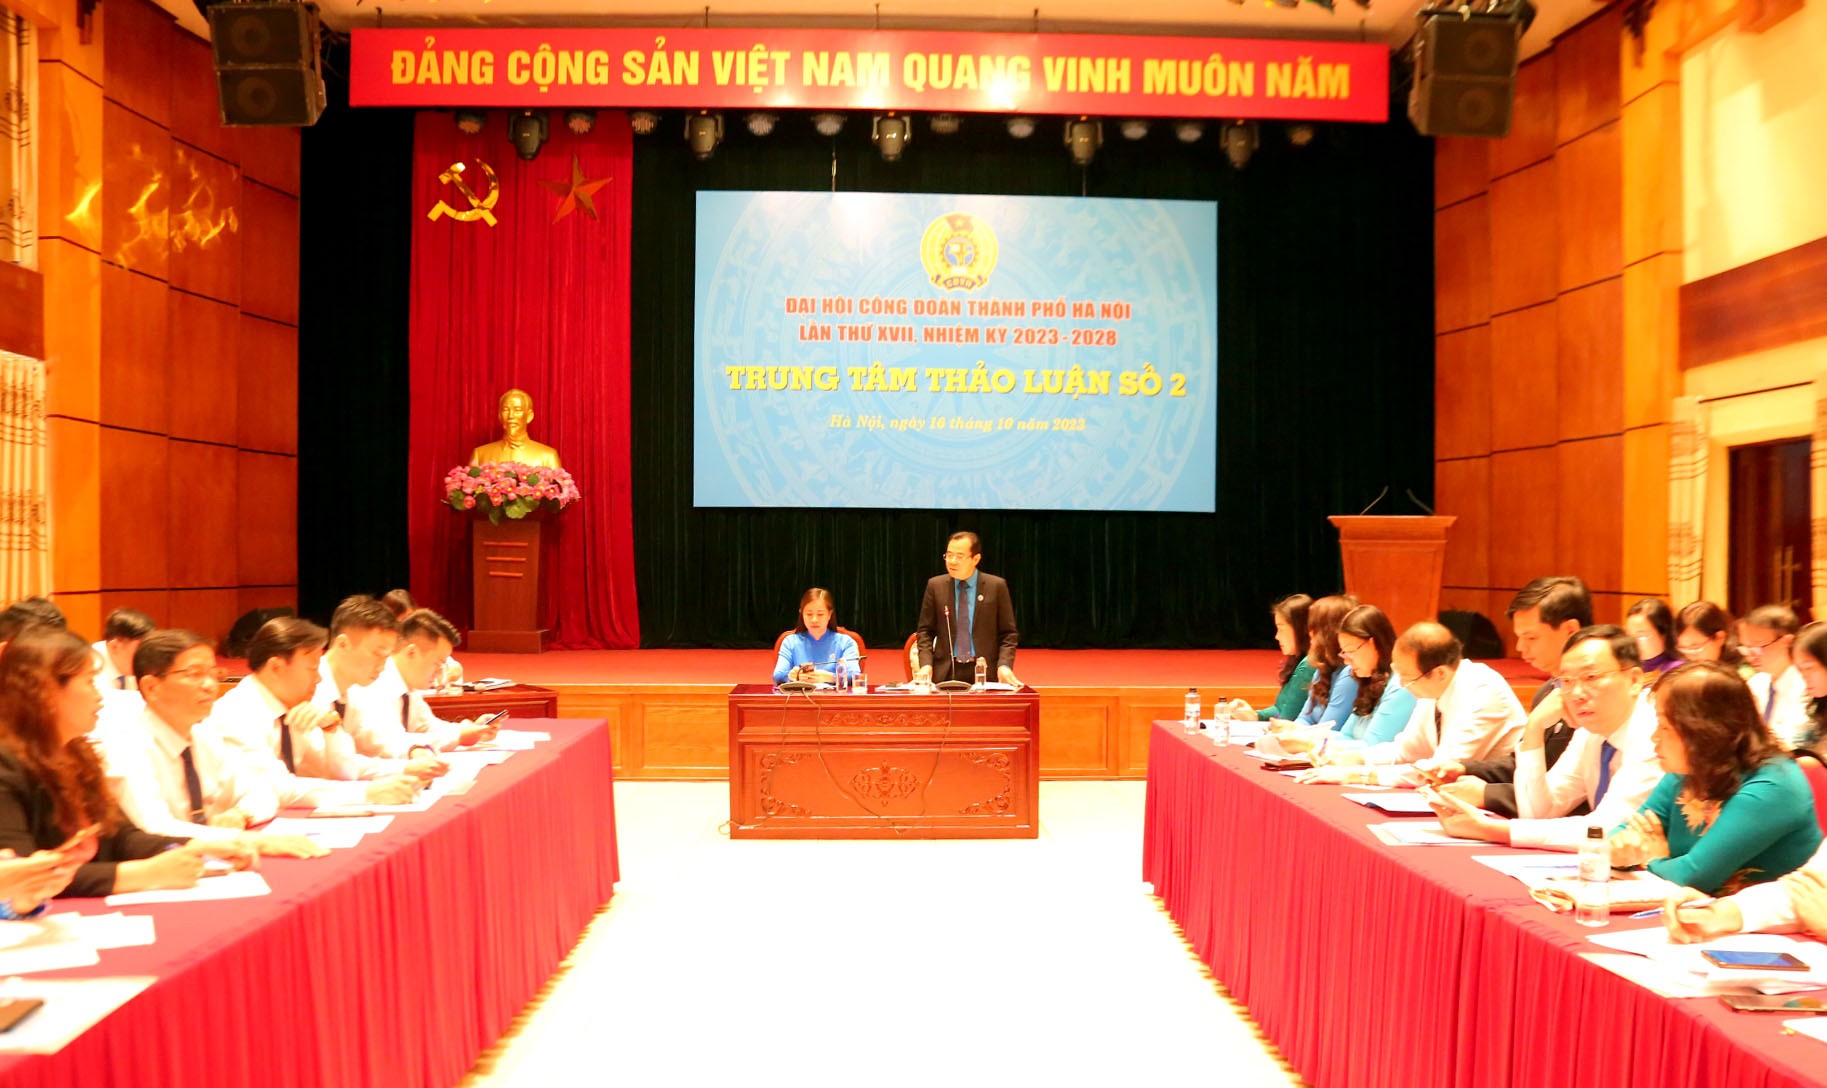 TRỰC TUYẾN: Ngày làm việc thứ nhất Đại hội Công đoàn thành phố Hà Nội lần thứ XVII